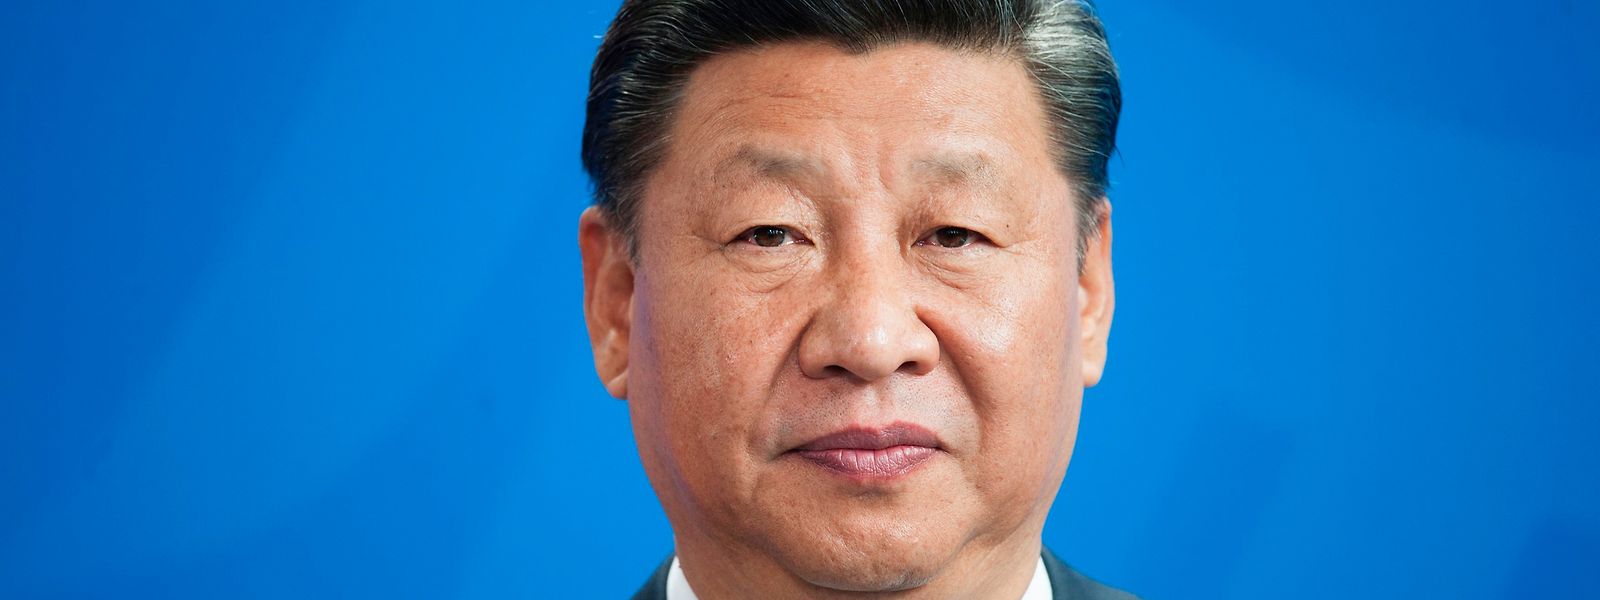 Chinas Staats- und Parteichef Xi Jinping will sein Land im Nahen Osten als wirtschaftliche Alternative zu den USA und Europa verkaufen - ohne das Thema Menschenrechte zu thematisieren.